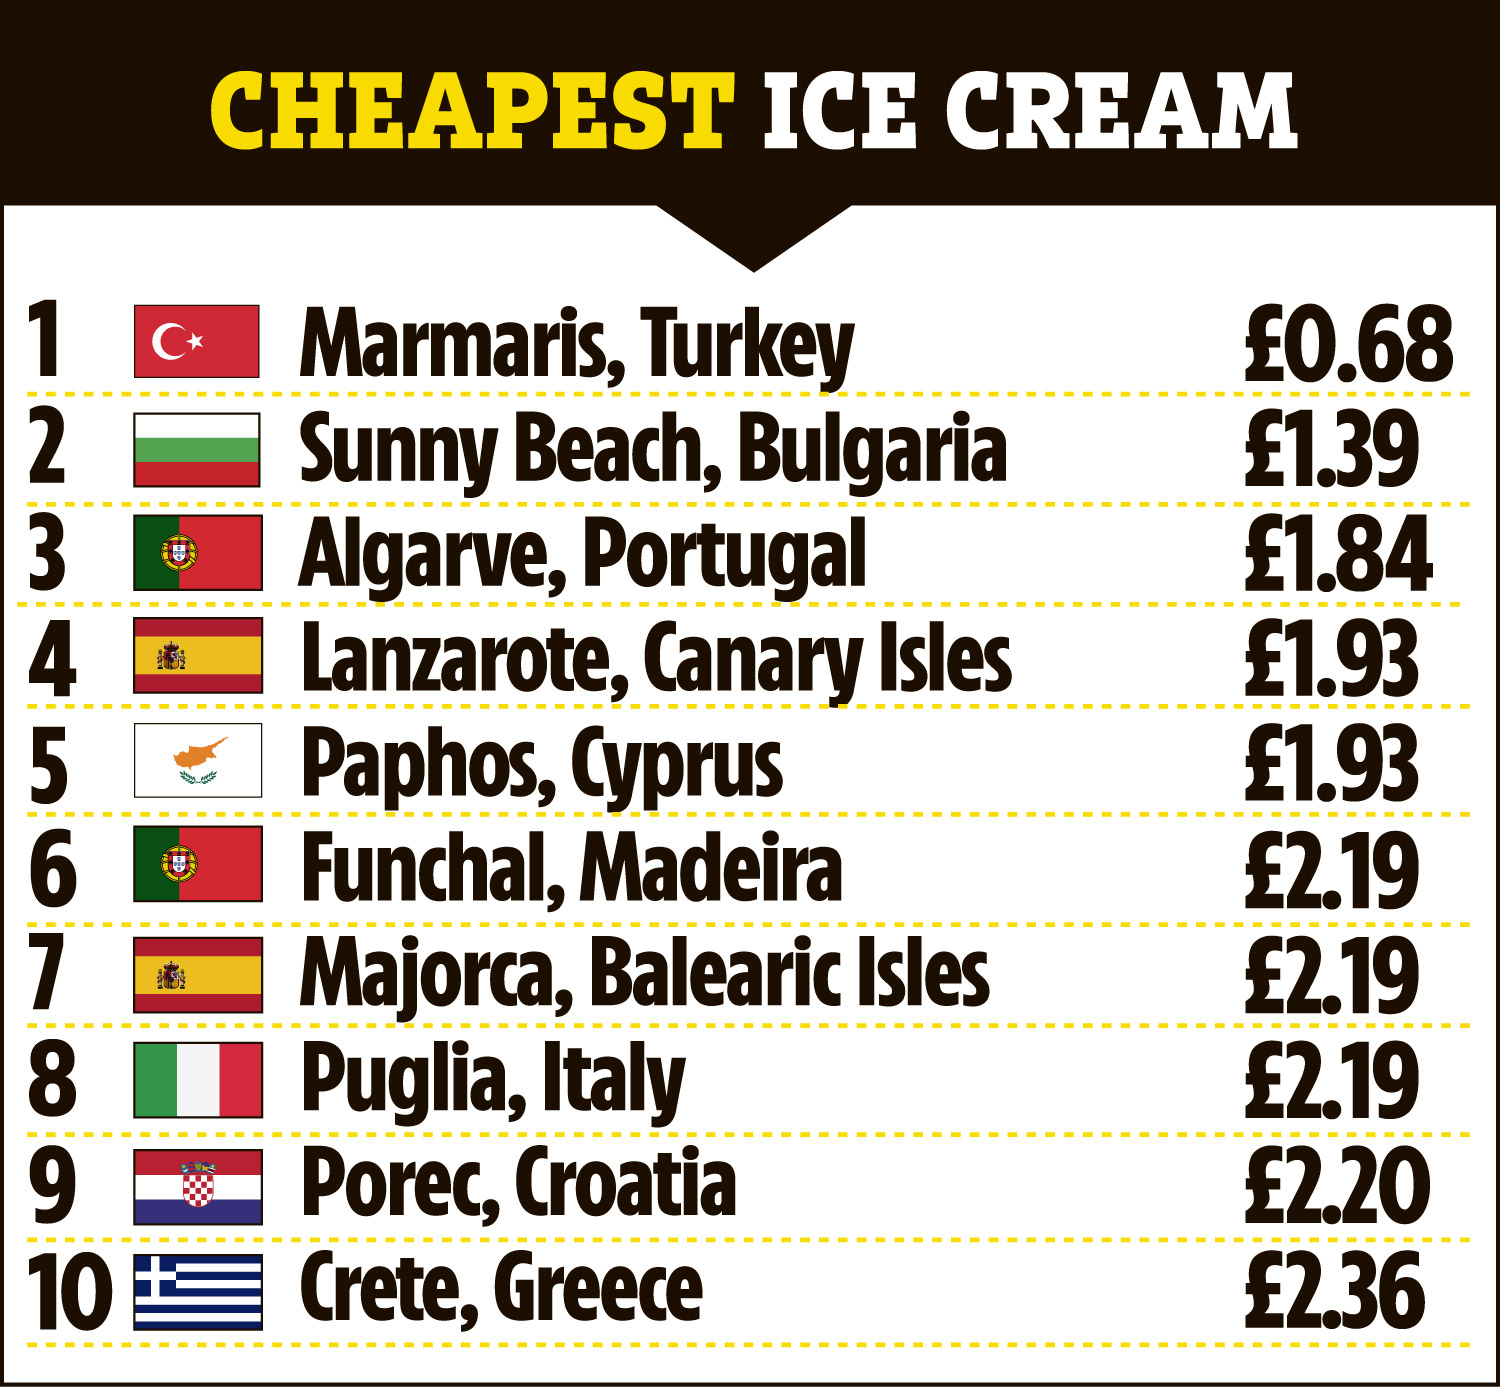 Marmaris en Türkiye tiene el helado más barato por £ 0.68